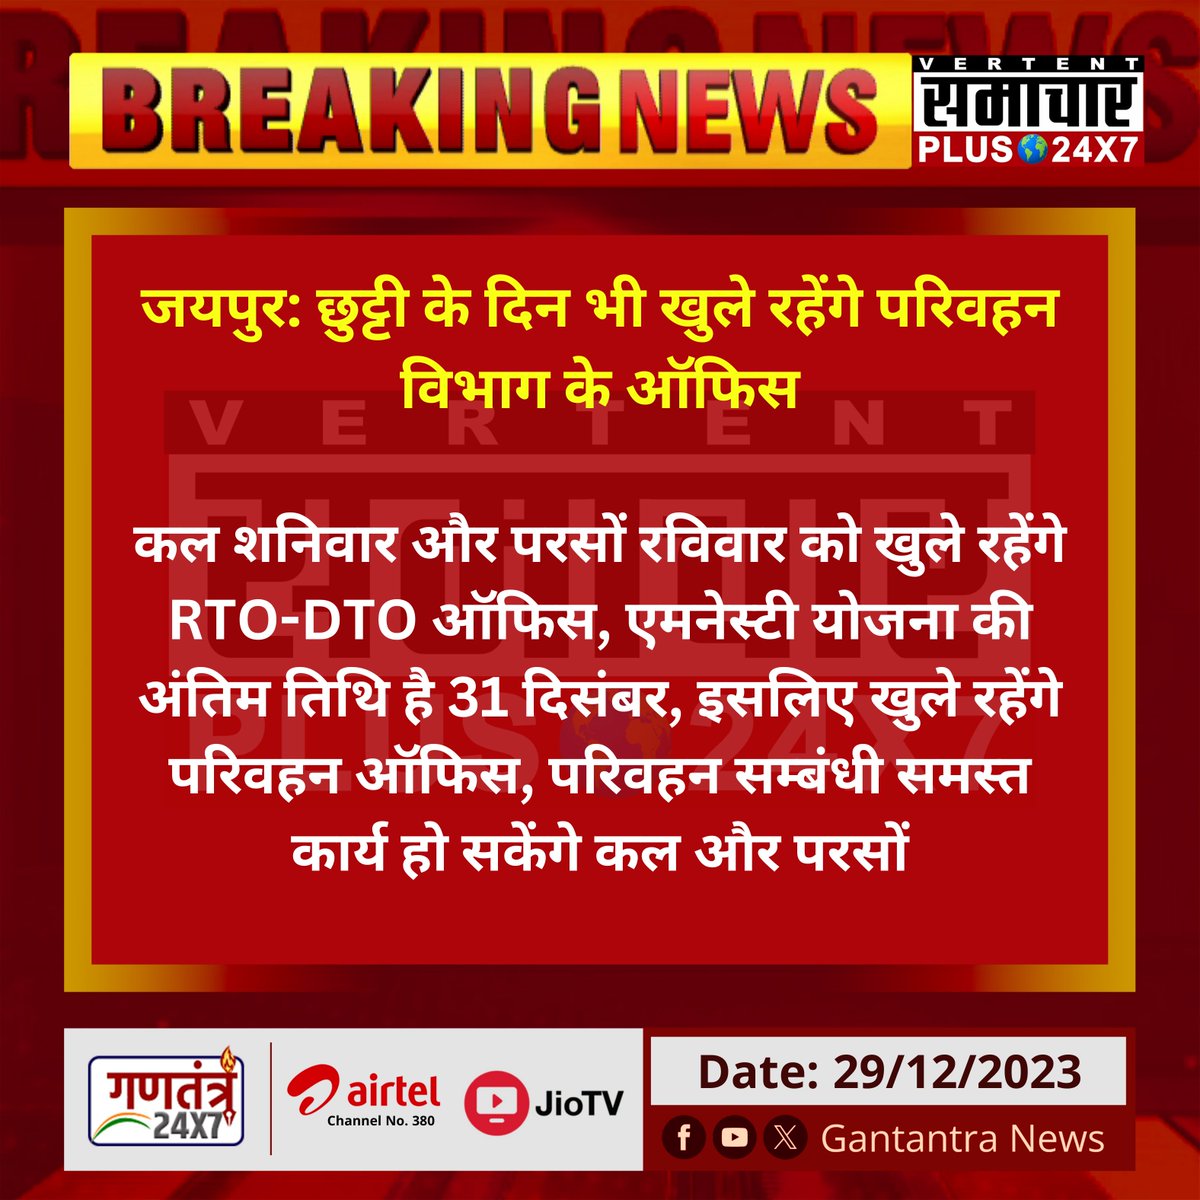 जयपुर: छुट्टी के दिन भी खुले रहेंगे परिवहन विभाग के ऑफिस

कल शनिवार और परसों रविवार को खुले रहेंगे RTO-DTO ऑफिस...
#Jaipur #Rajasthan #GantantraNews_ @RajTransportRS #परिवहनविभाग